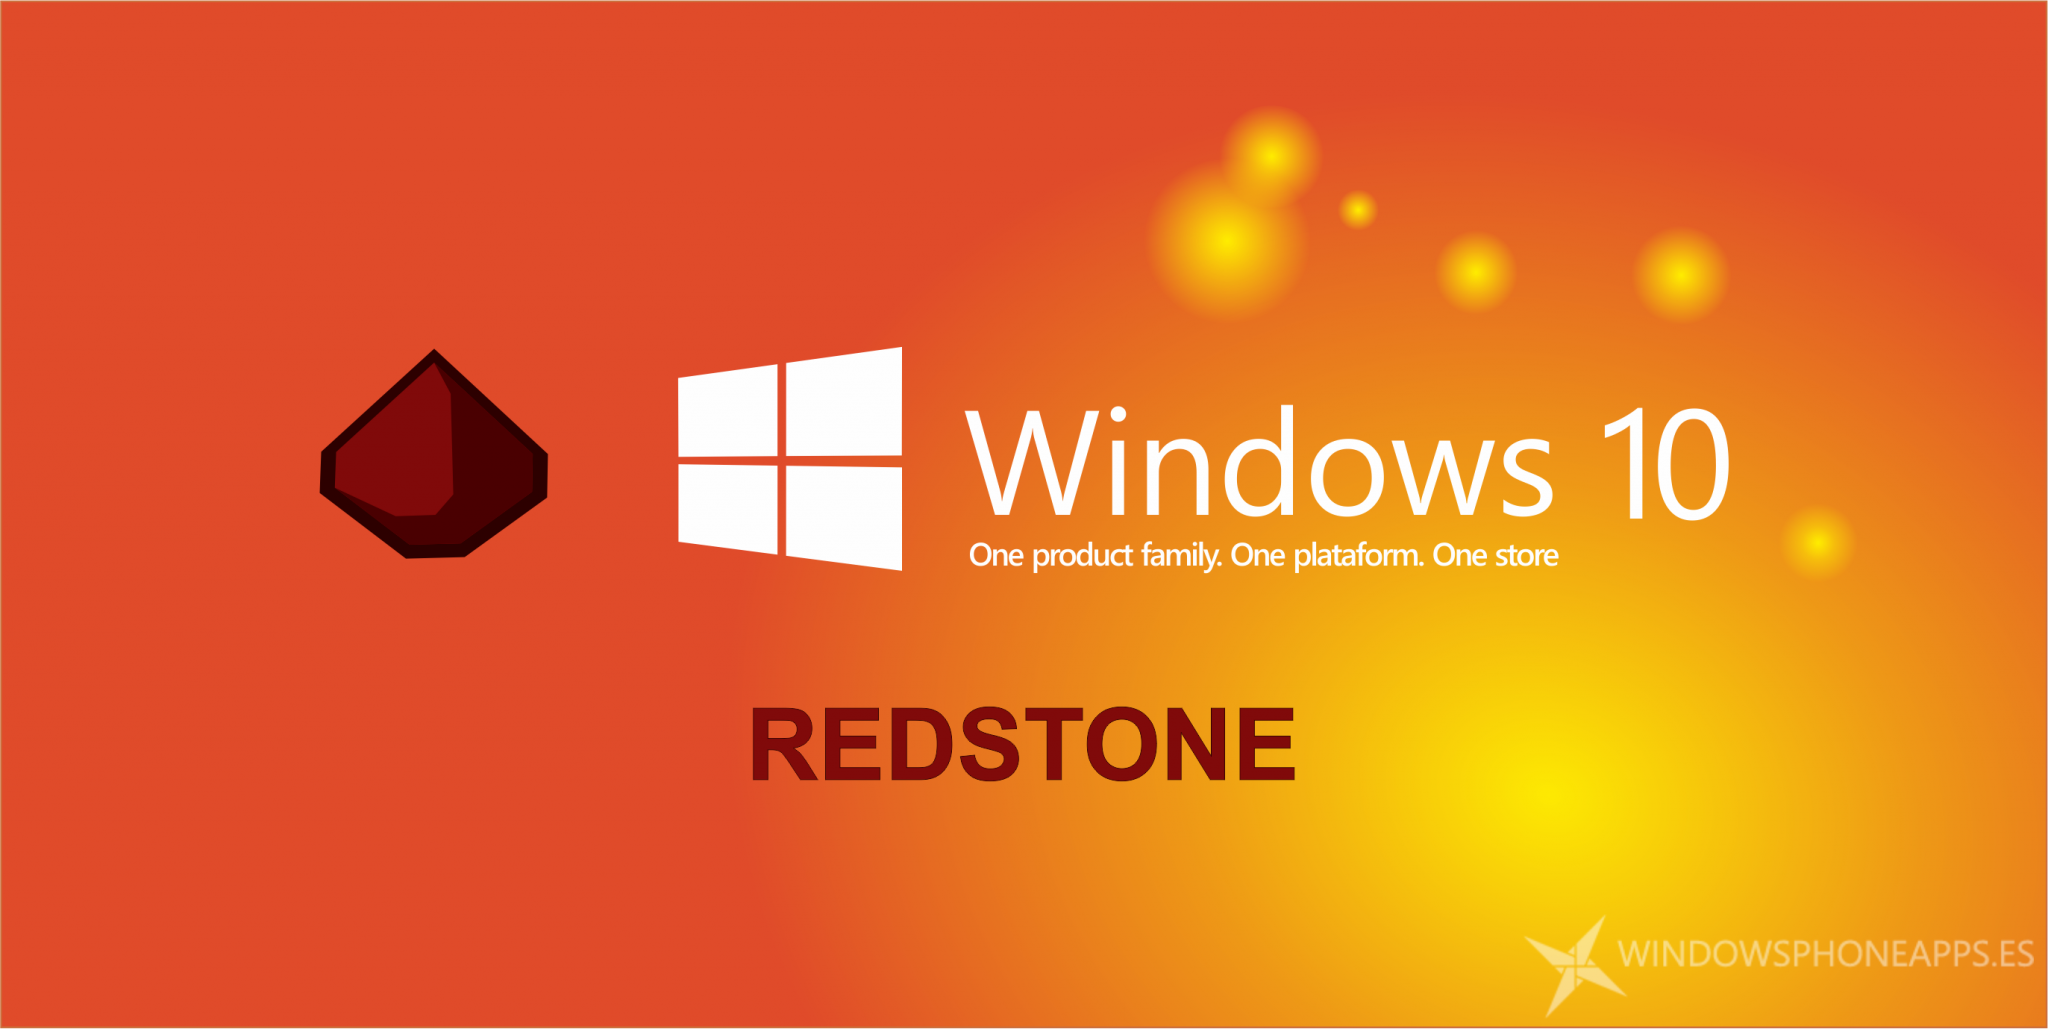 Microsoft retrasaría algunas características de Redstone en favor del OneCore